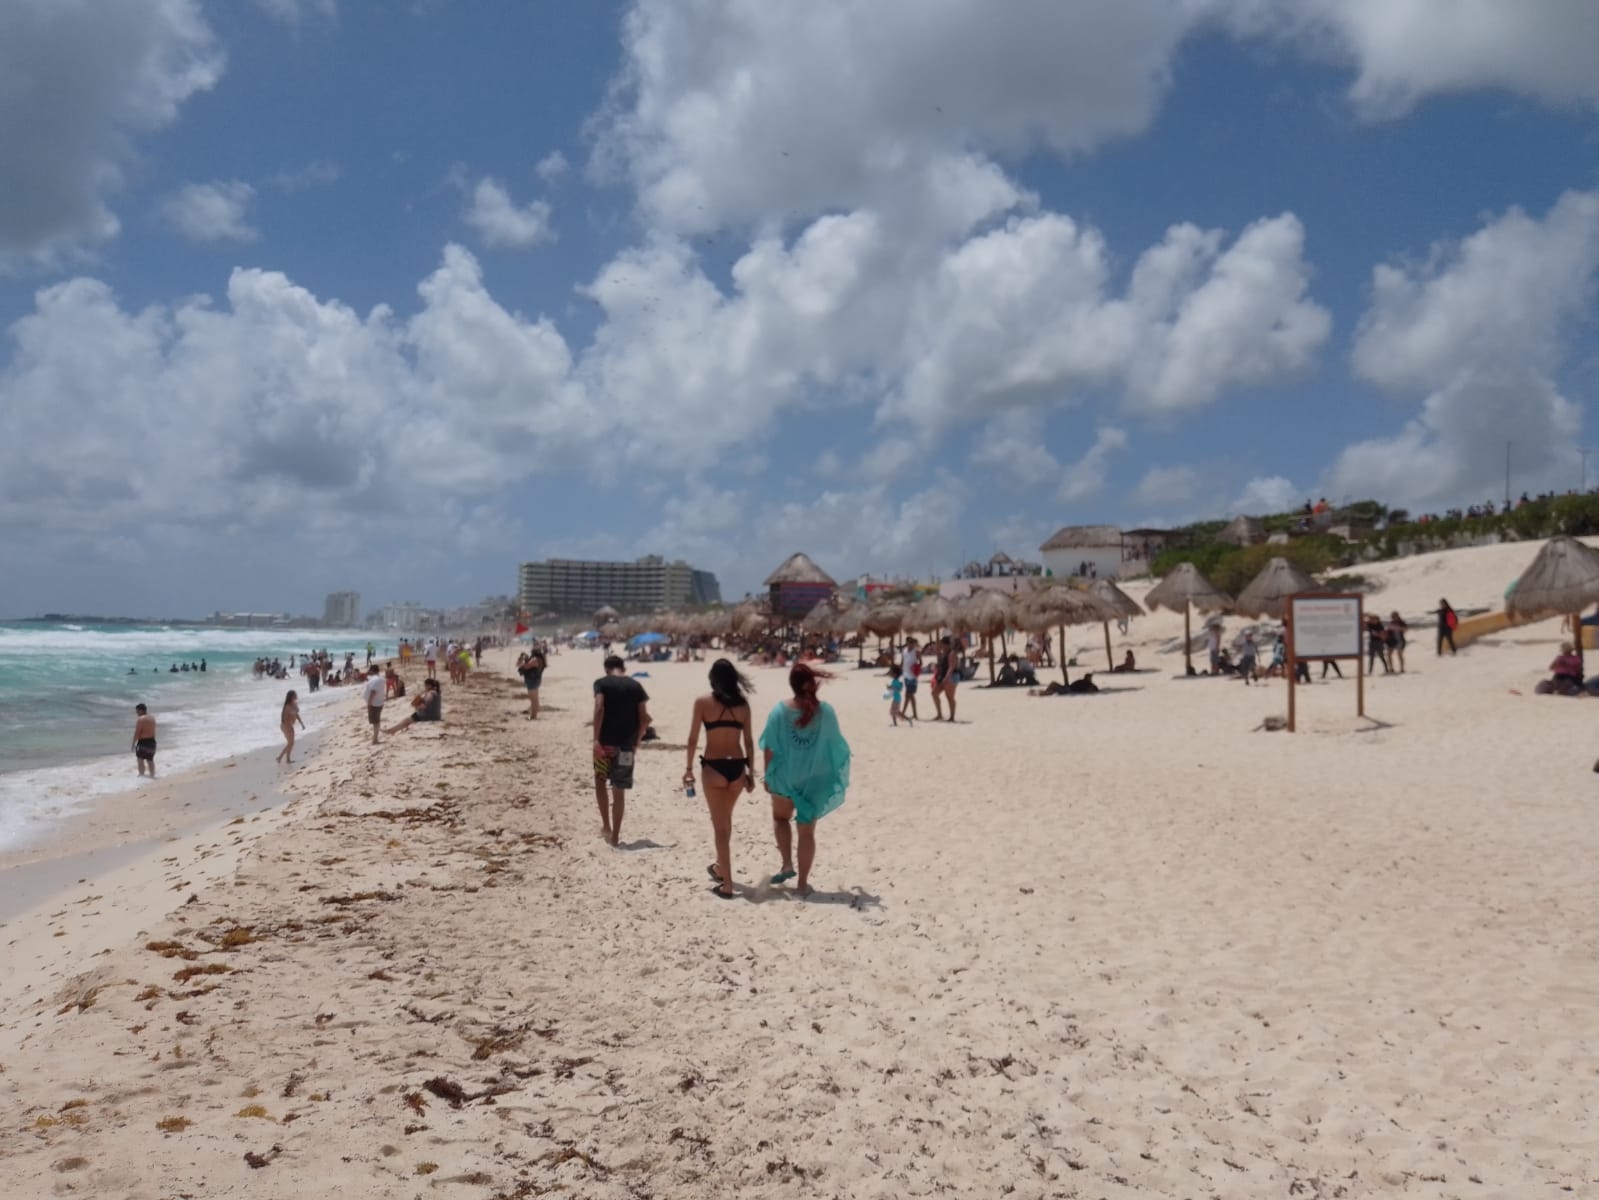 Turistas disfrutan de Playa Delfines en Cancún pese el Frente Frío: EN VIVO